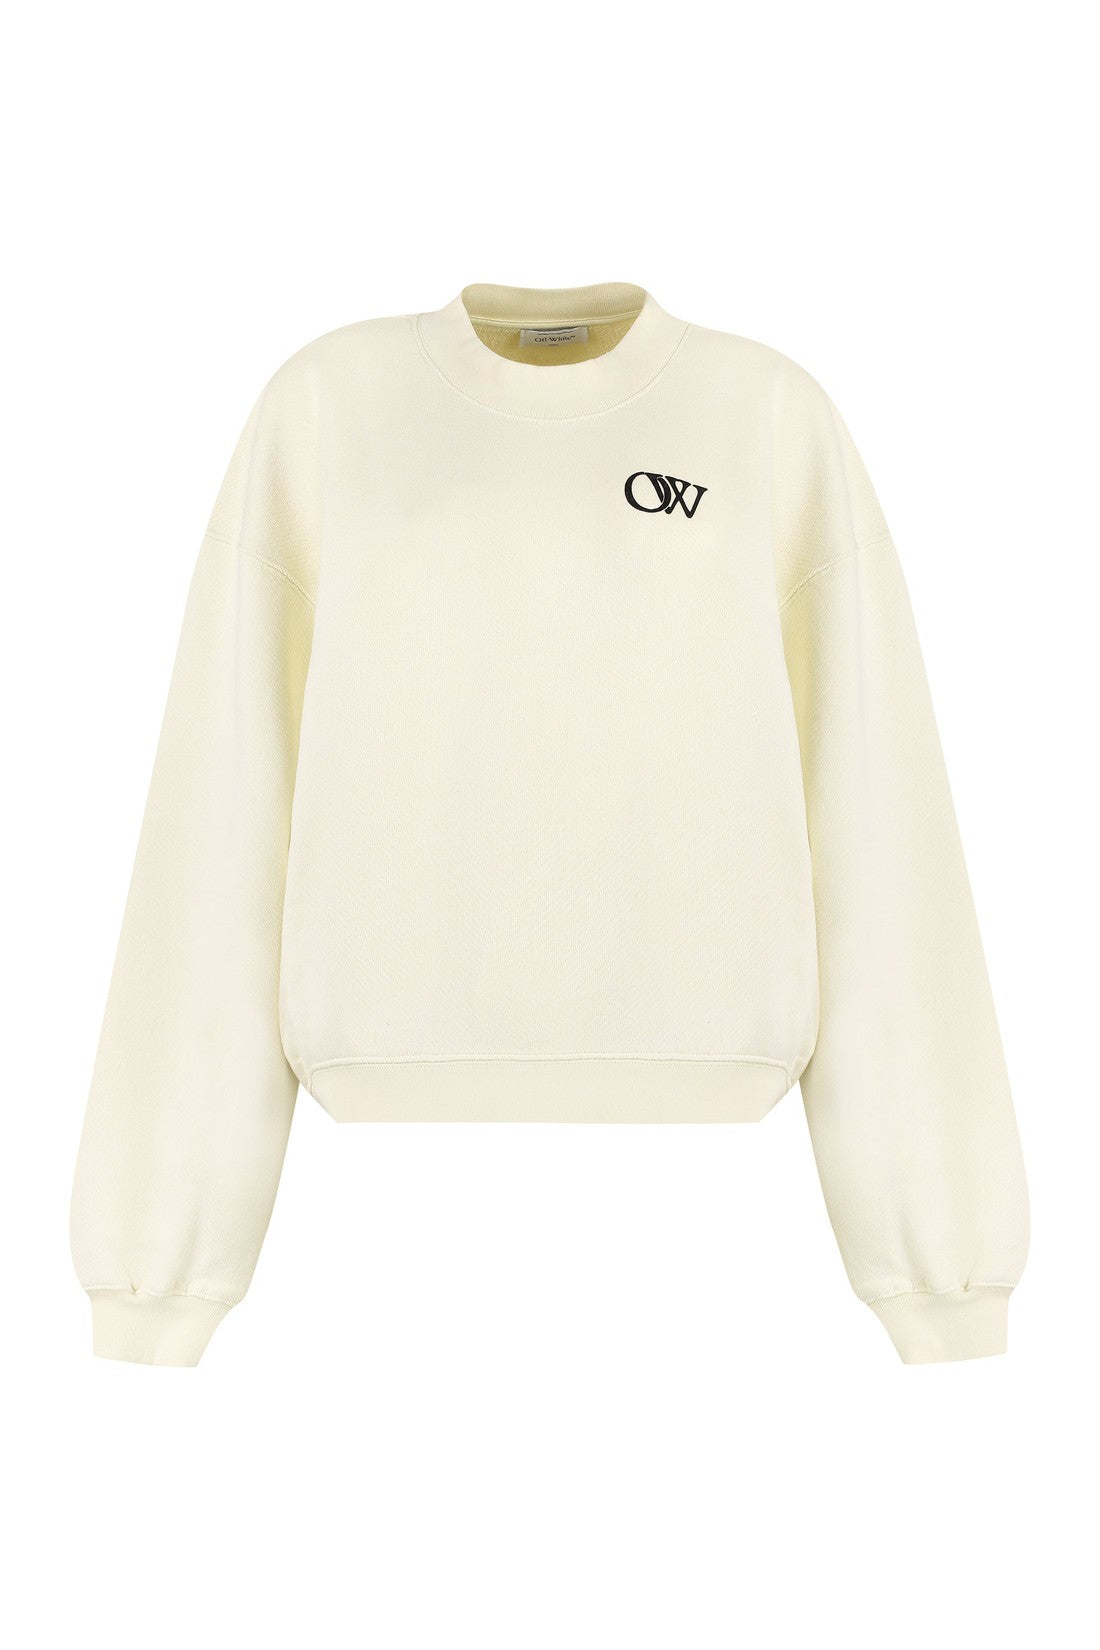 Off-White-OUTLET-SALE-Cotton crew-neck sweatshirt-ARCHIVIST